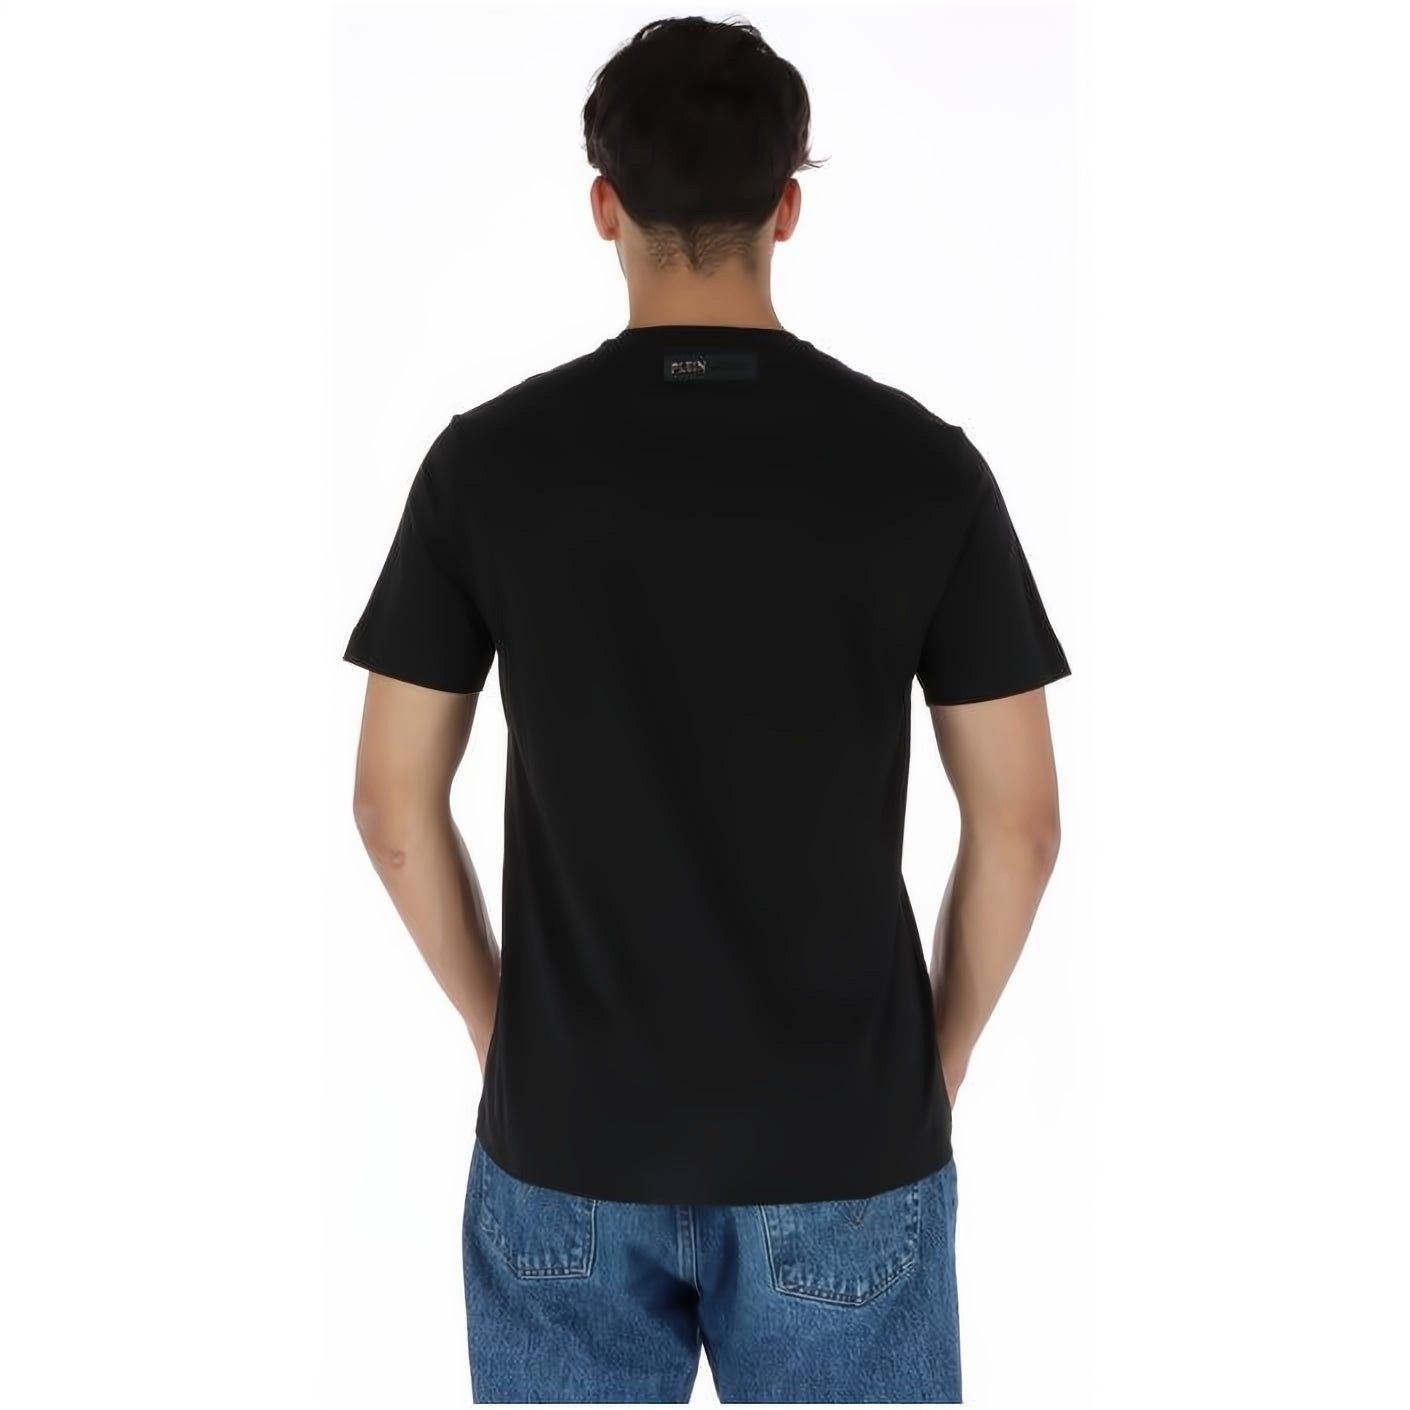 Tragekomfort, NECK vielfältige Stylischer ROUND PLEIN Farbauswahl hoher Look, T-Shirt SPORT